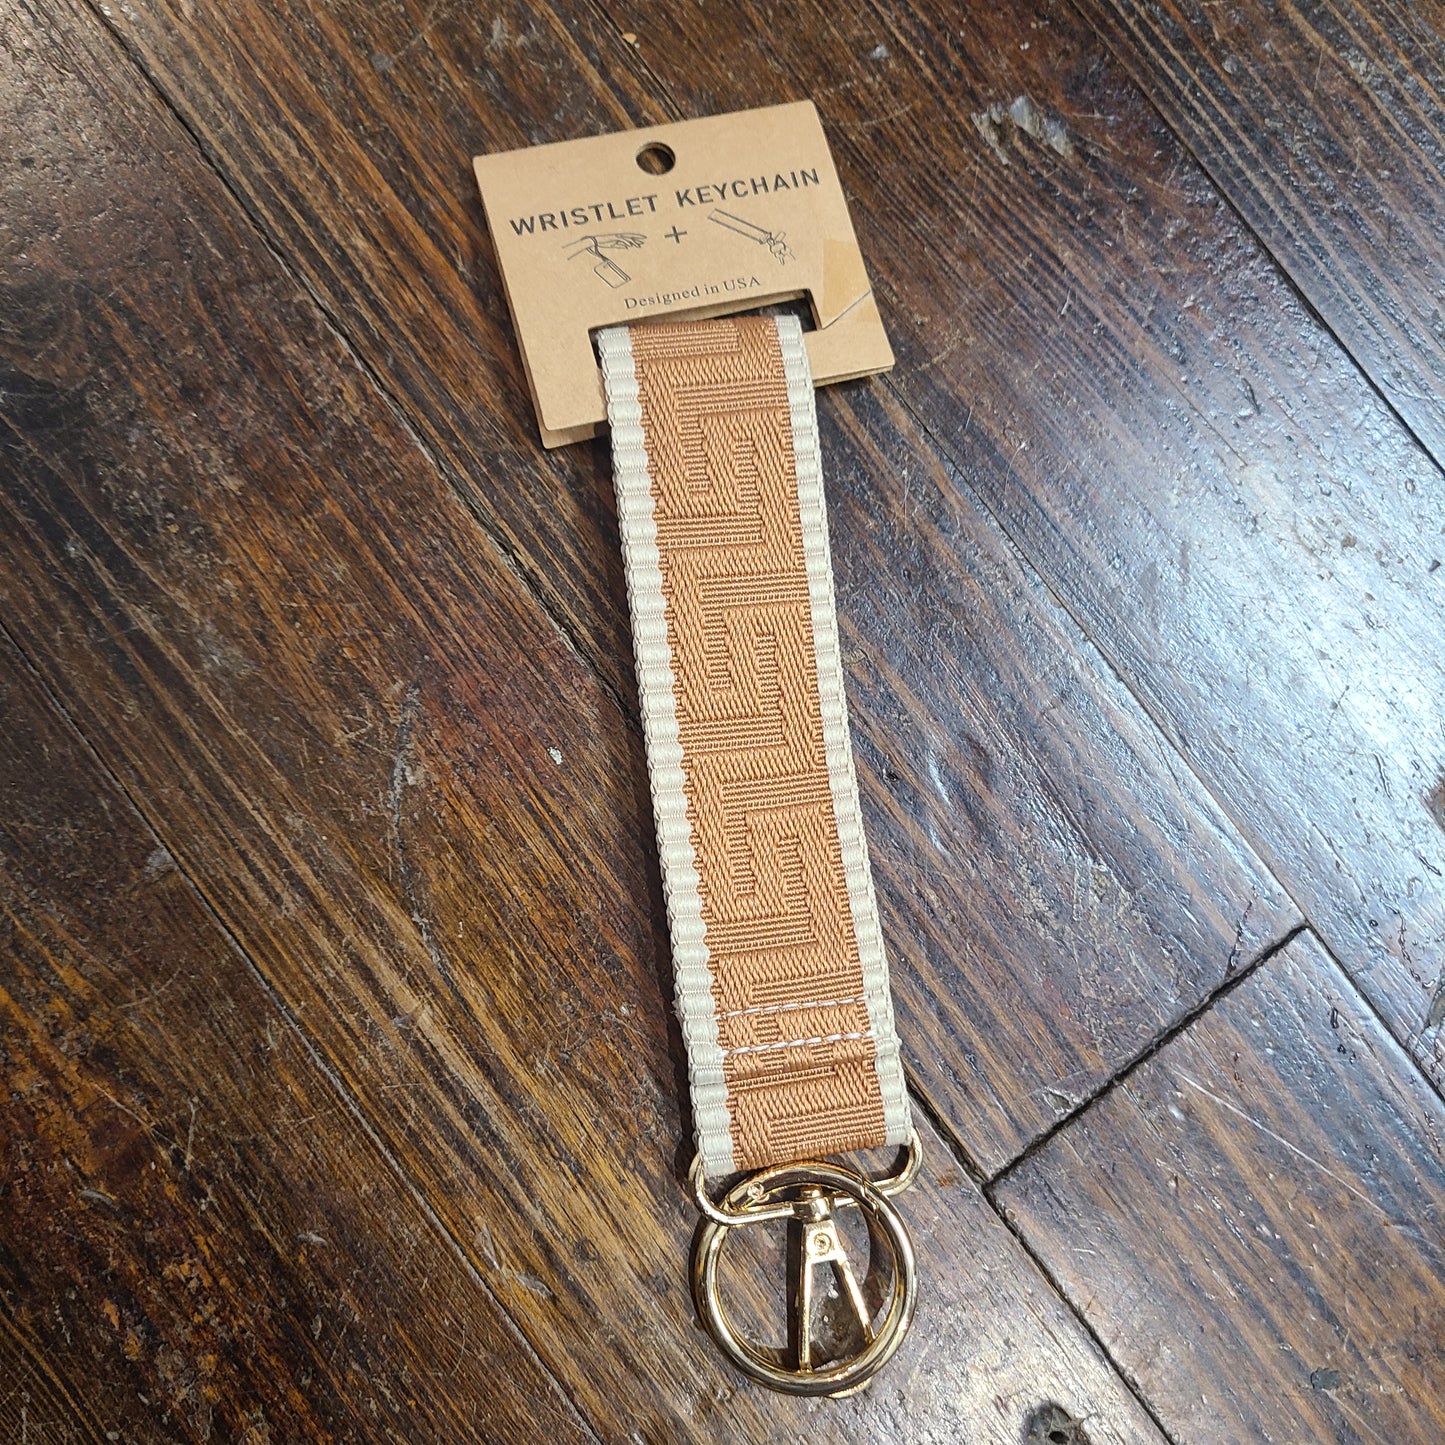 Wristlet + Keychain